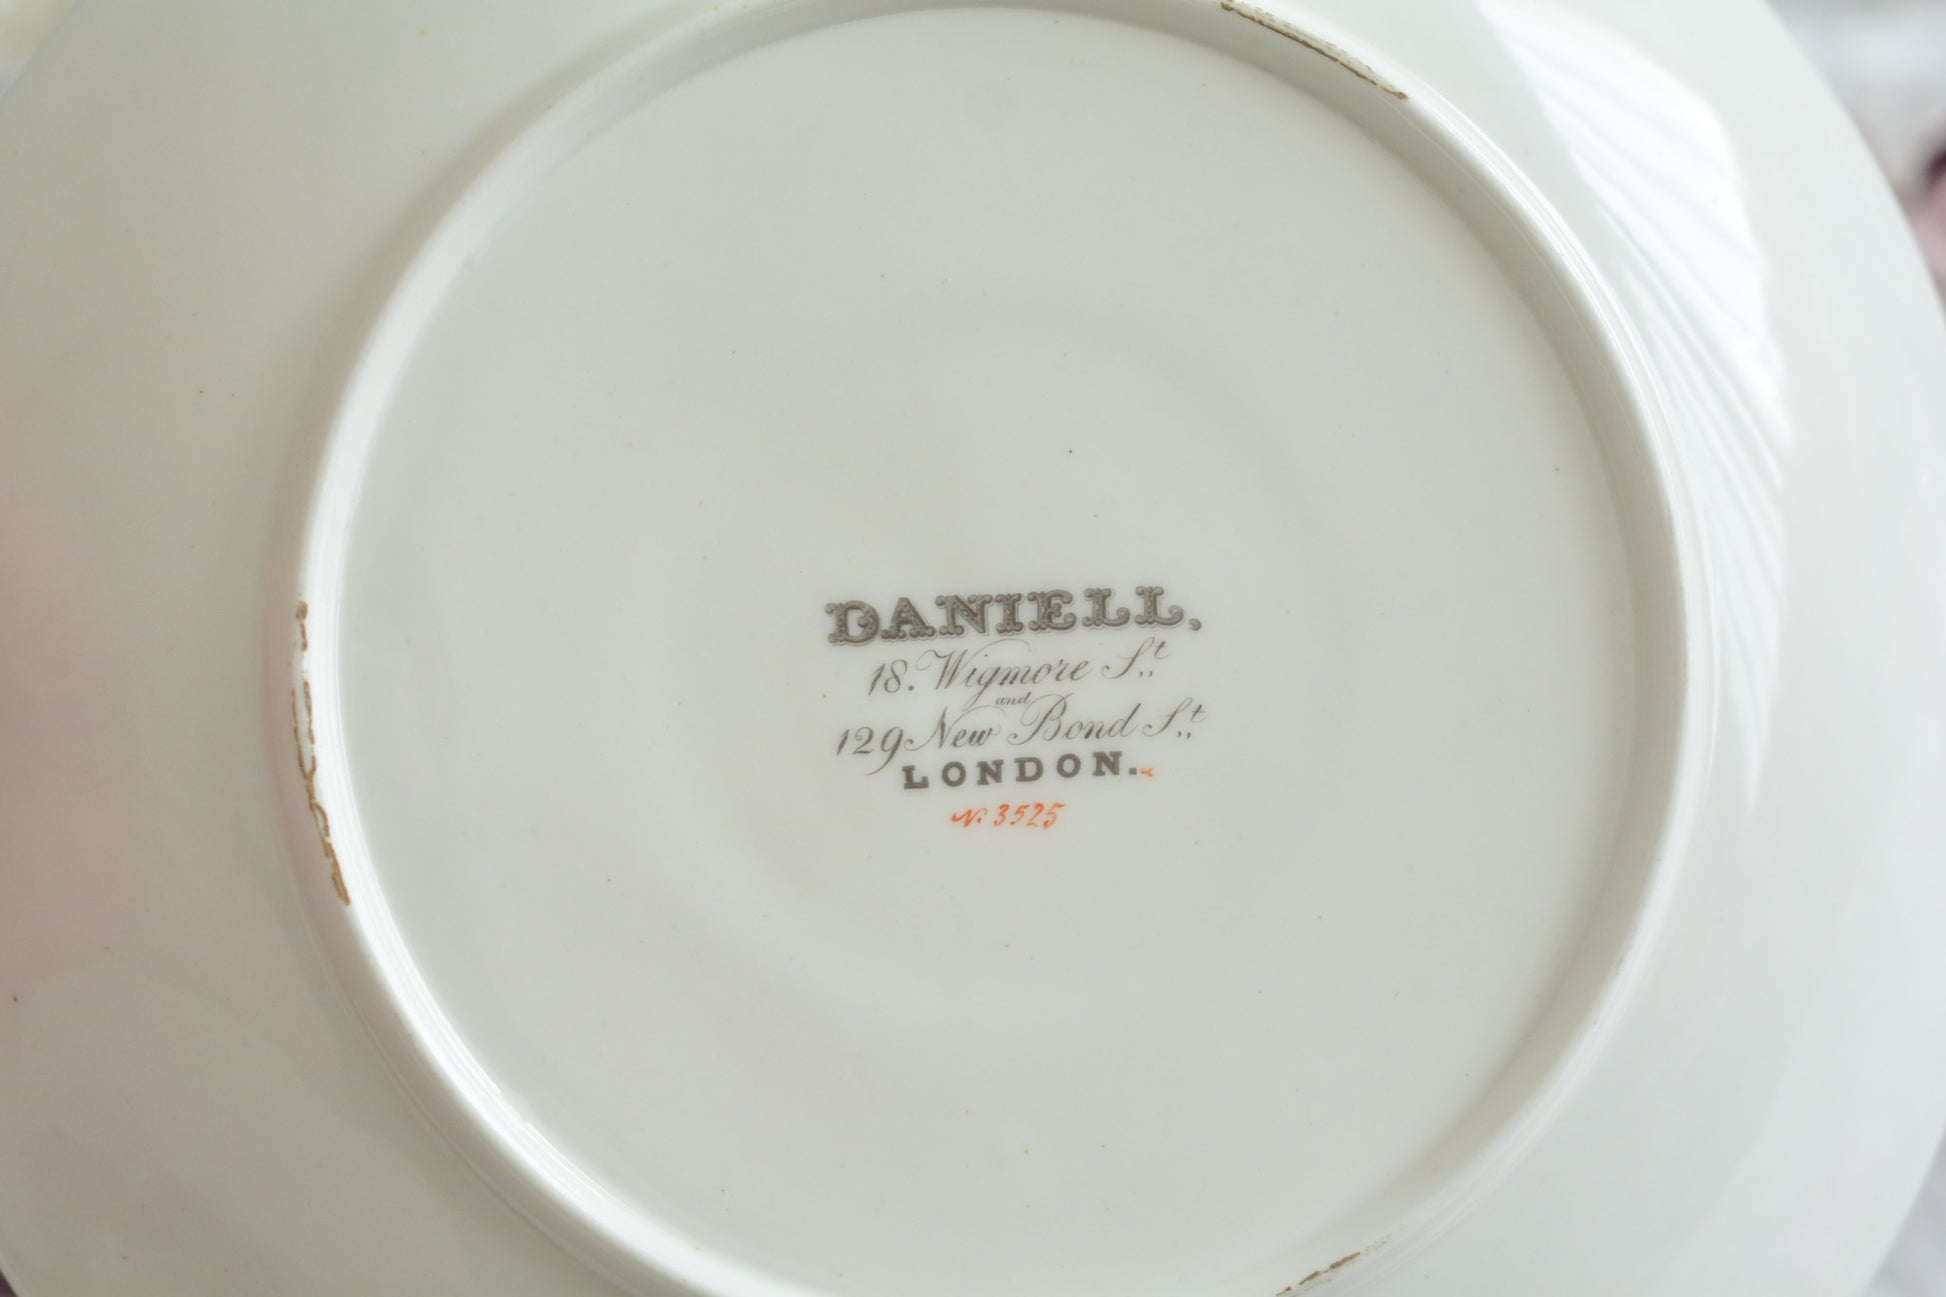 ロンドンに1825年〜1917年に営業していた「ダニエル」という小売店がオーダーしたデザートプレートです。バックスタンプはダニエルのマークのみで製造元のマークはありません。その為どのメーカーにオーダーしたのは詳細はわかりませんが、可憐な小花たちがとても美しいプレートです。ダニエルは、コールポートなどに特注品をオーダーしていたと専門書に記述があります。きっと力のあった小売店だったのだろうと思います。